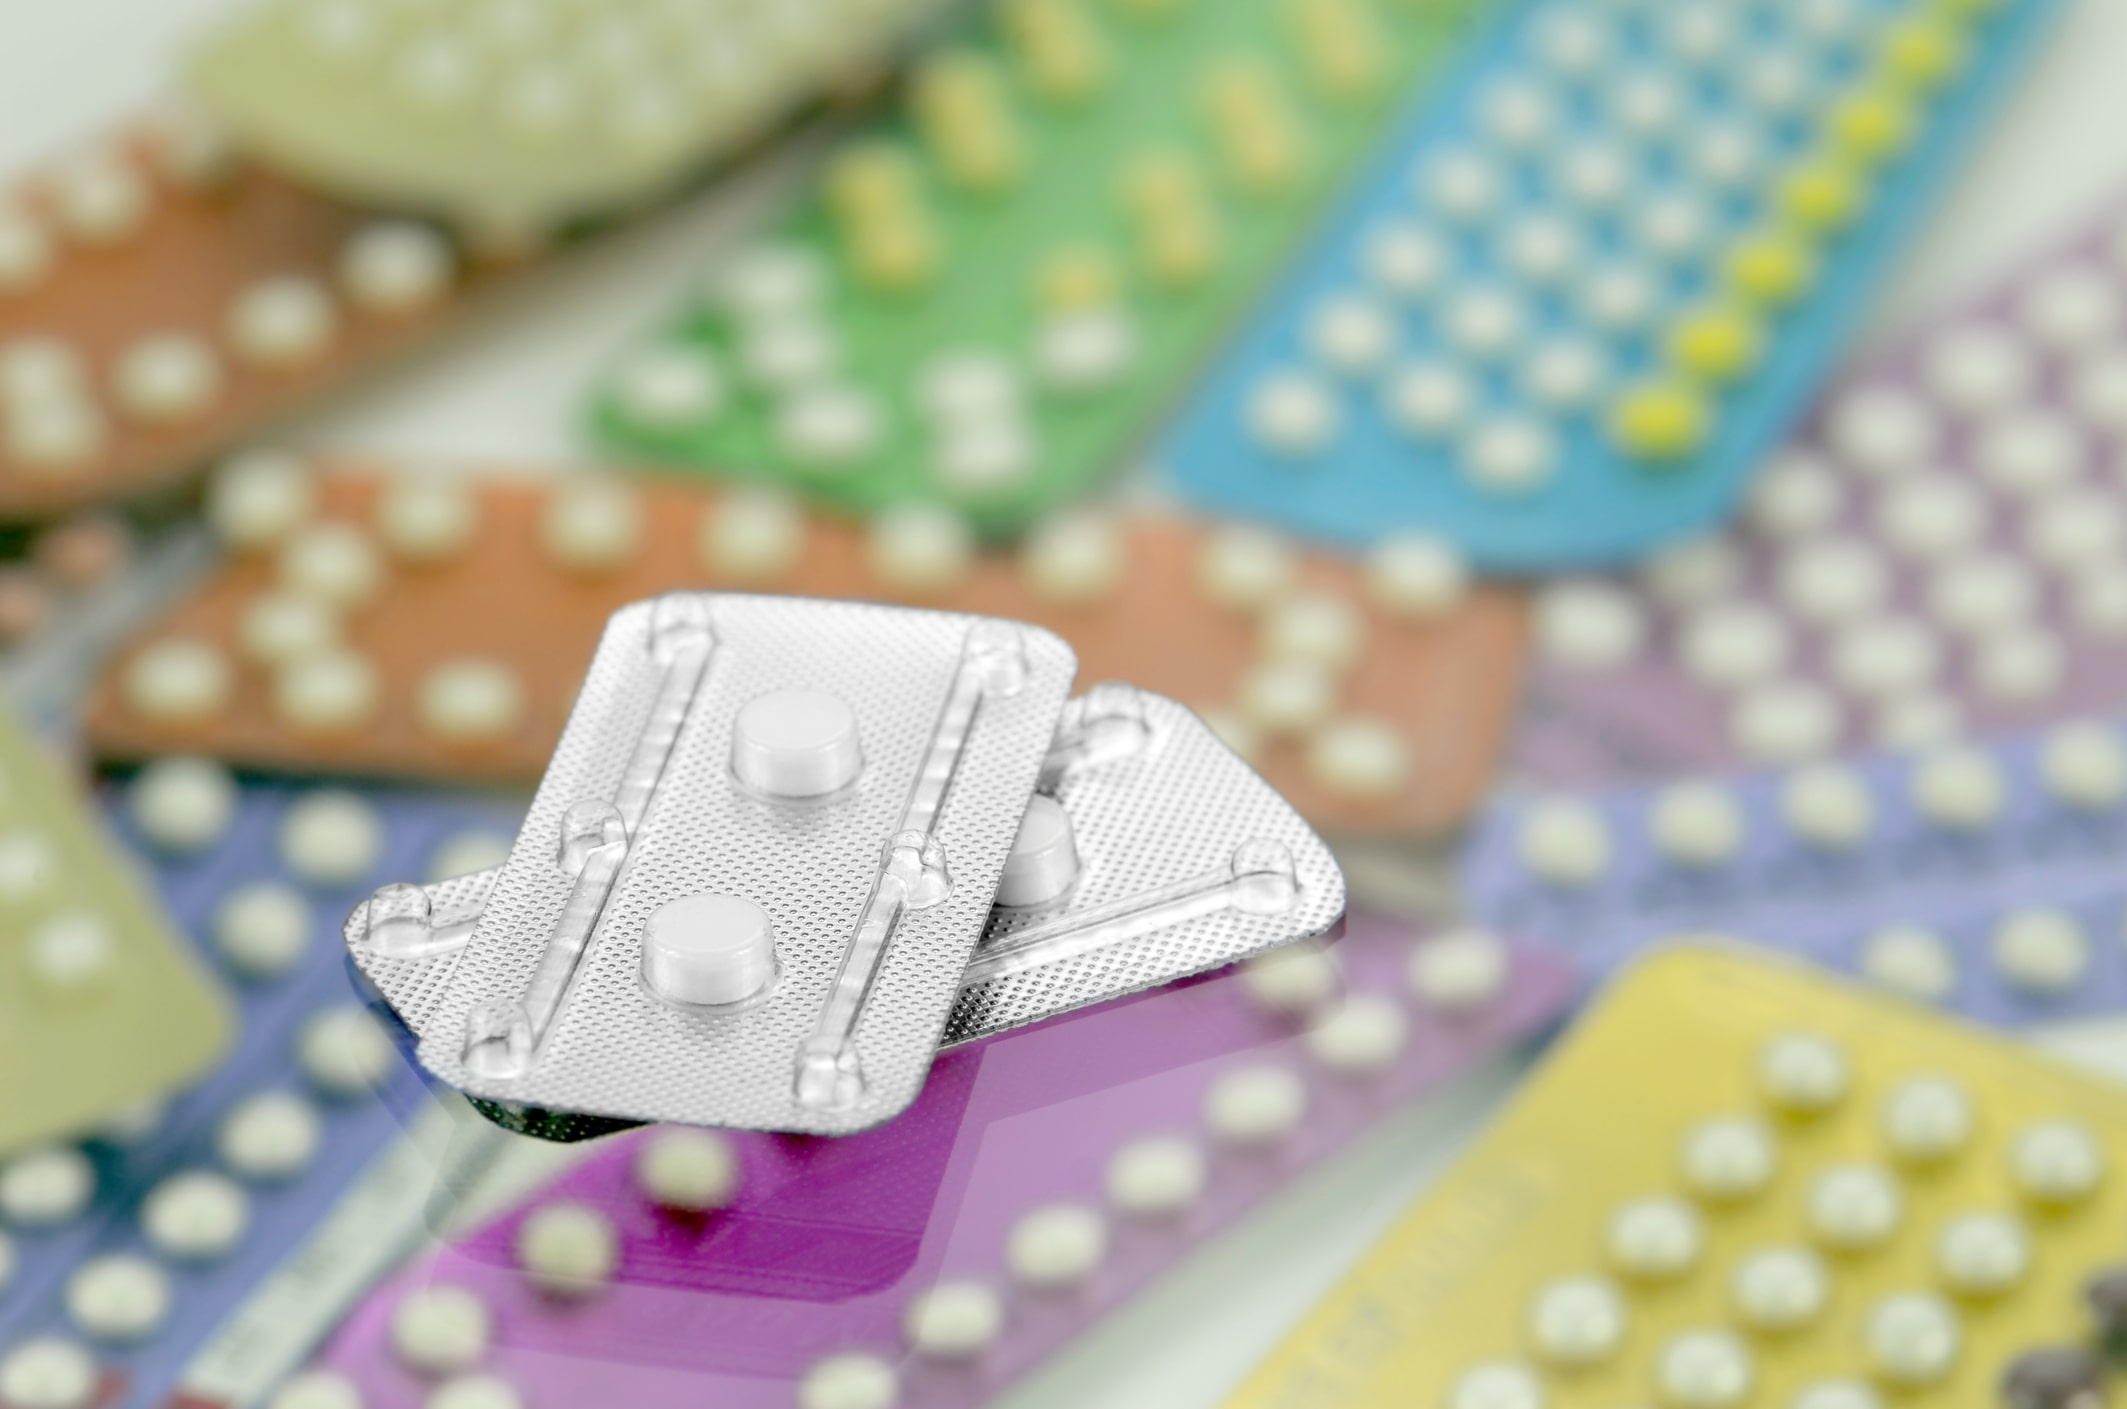 La contraception d'urgence